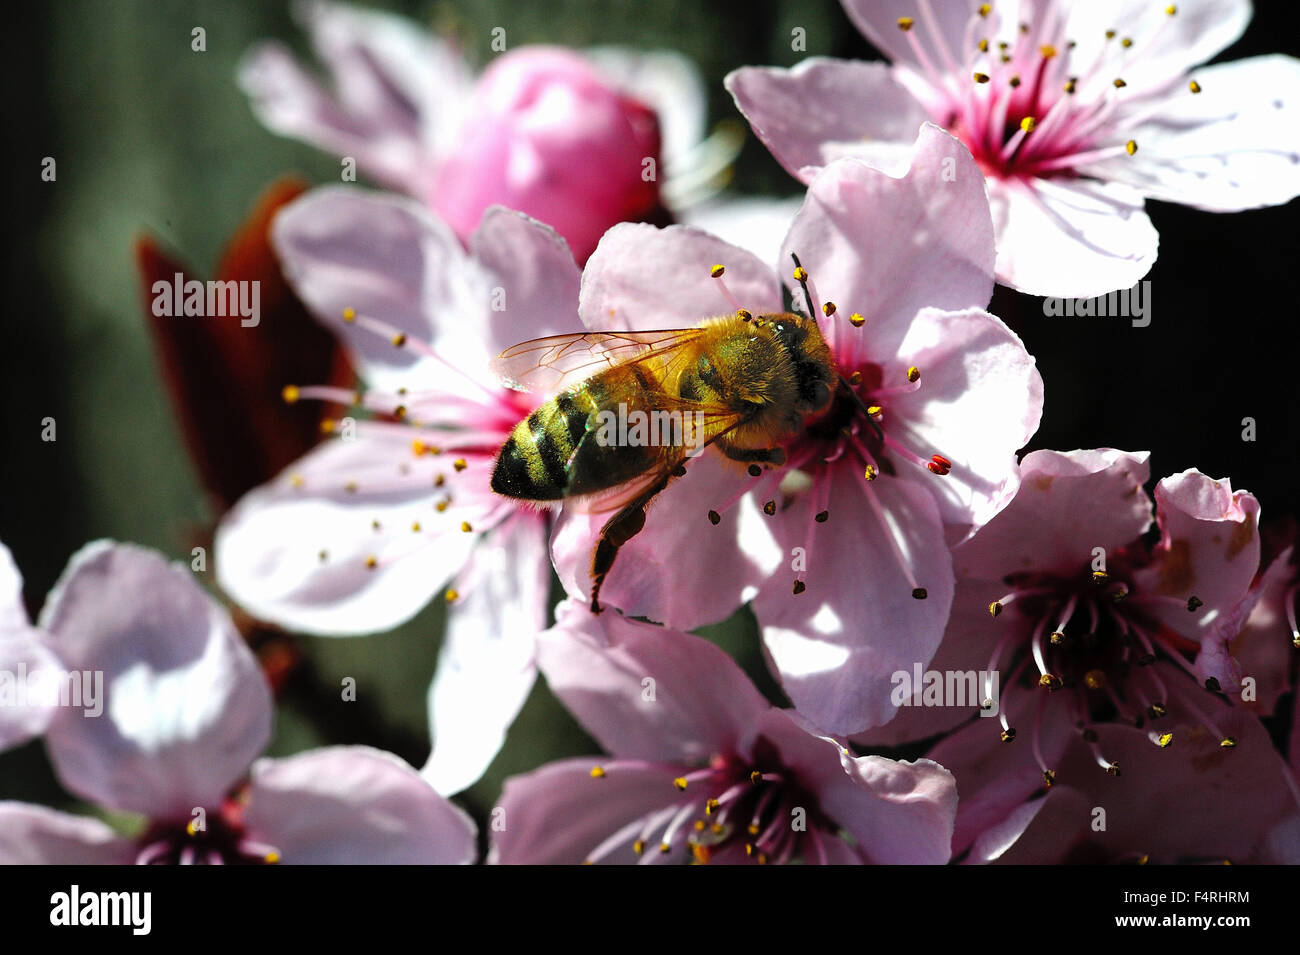 Alemania, florece, florece la primavera, las abejas, flores, frutas, flores, árboles floreciendo, insectos, polen, polen de flores, sangre pl Foto de stock